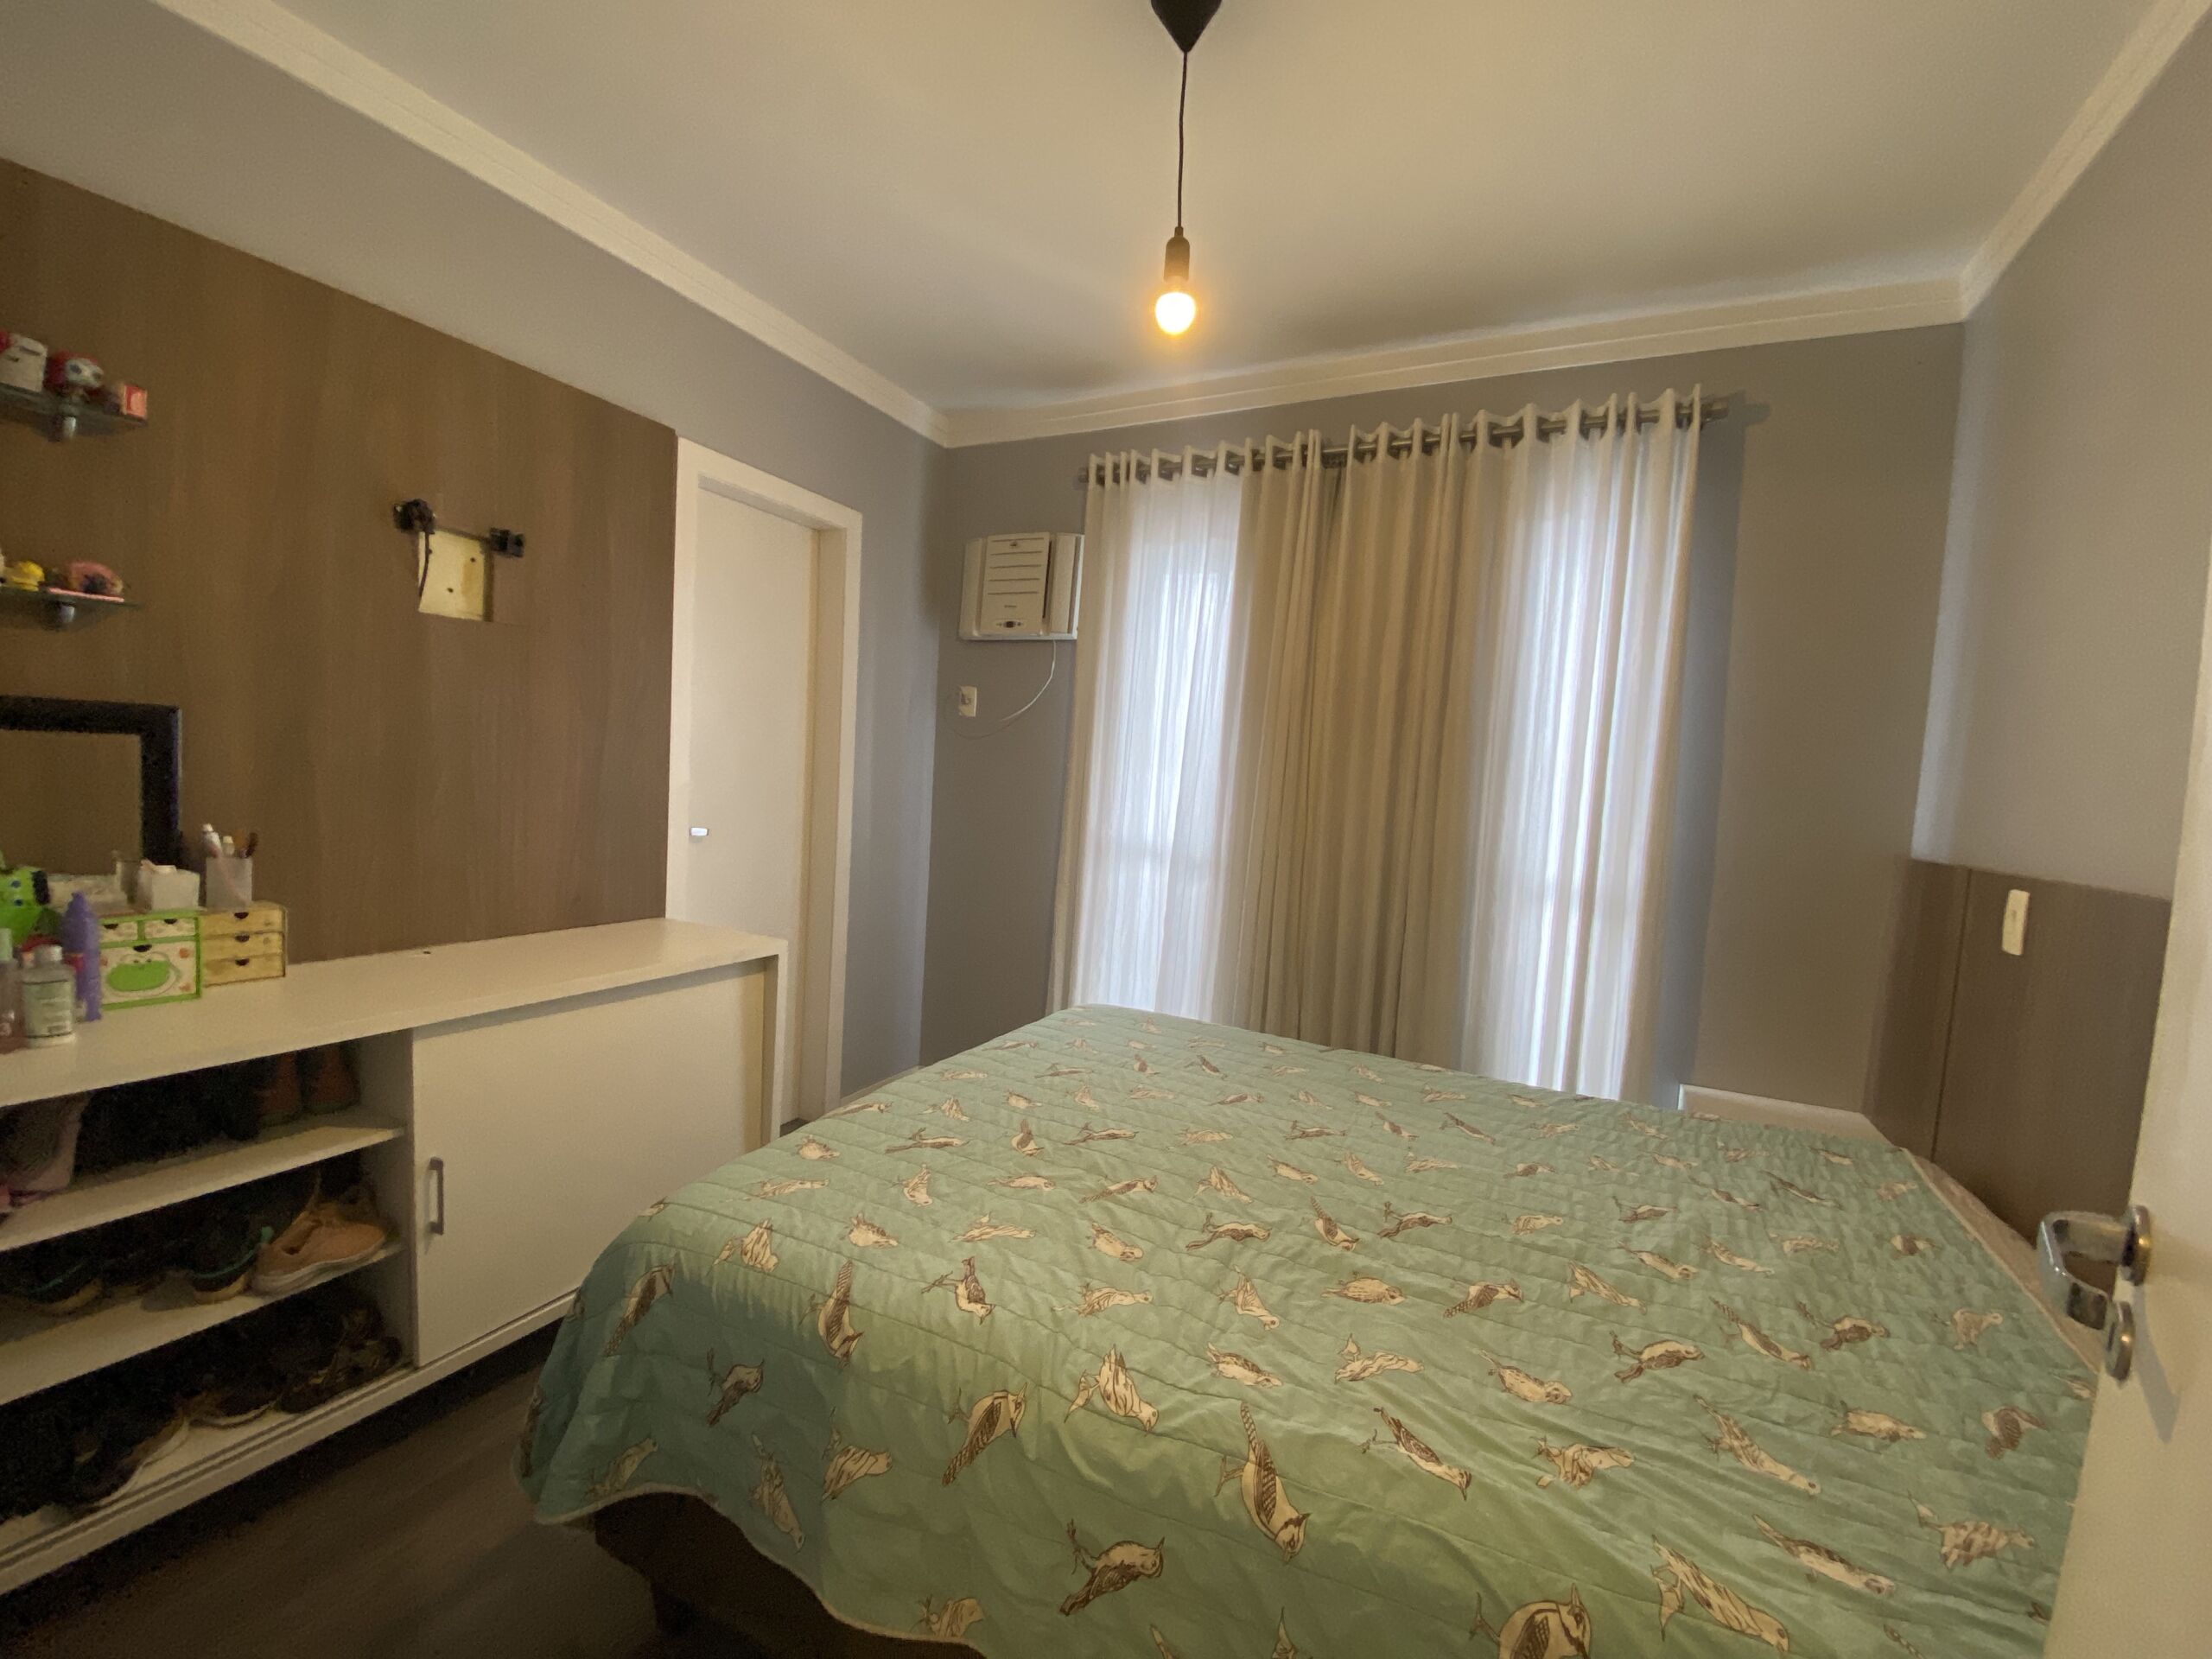 Apartamento semi-mobiliado com 1 suite + 1 dormitório – Residencial Aquila